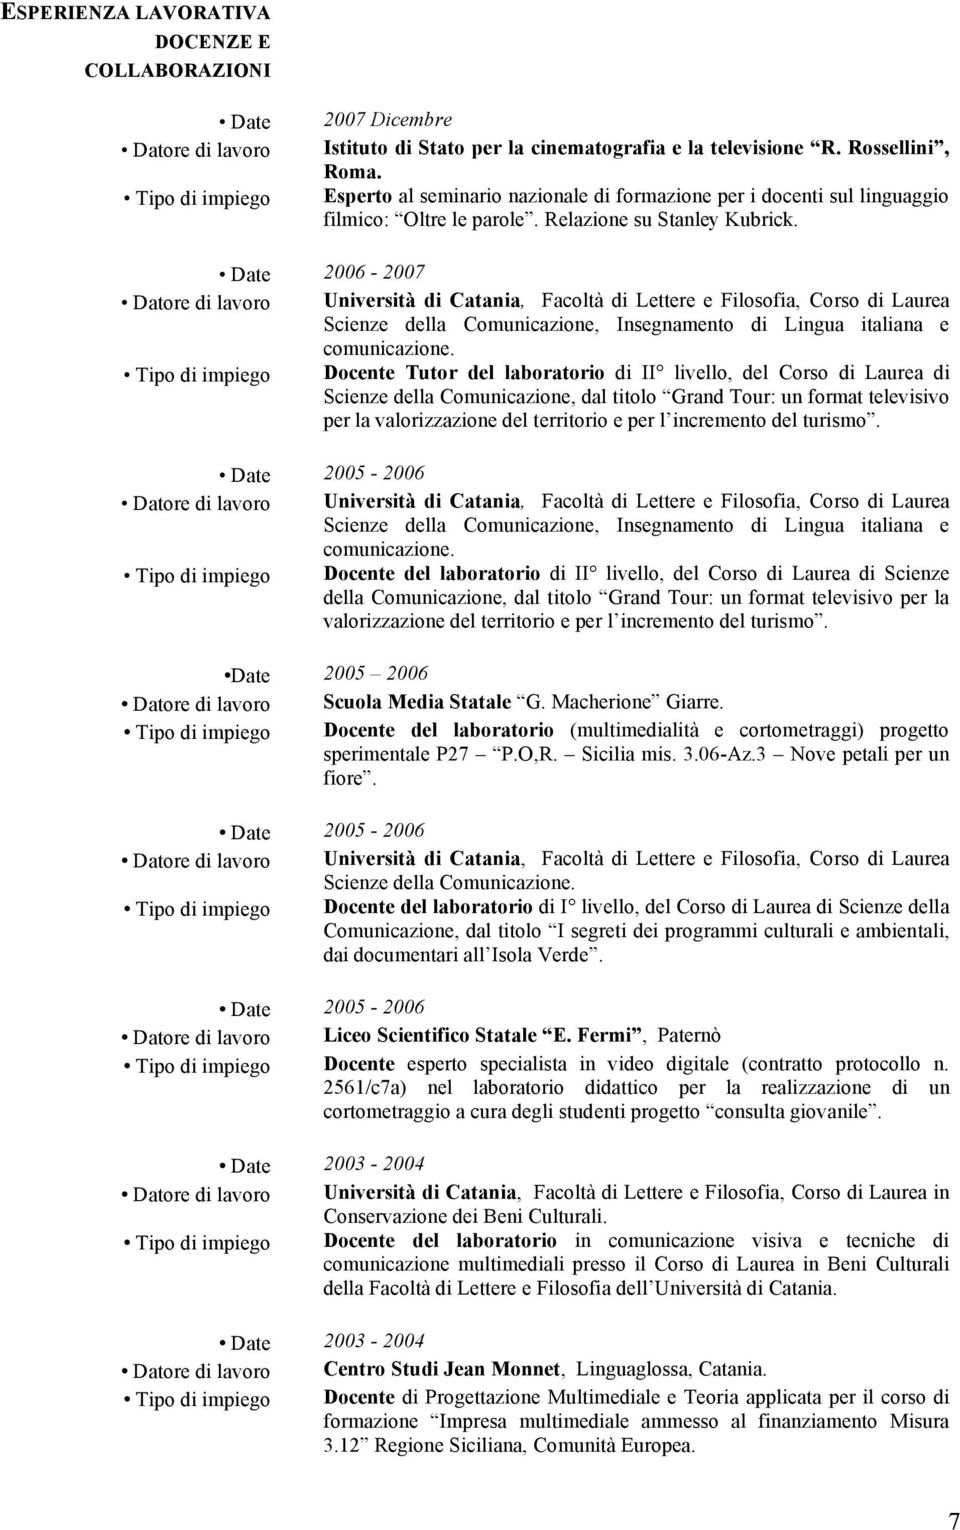 Date 2006-2007 Datore di lavoro Università di Catania, Facoltà di Lettere e Filosofia, Corso di Laurea Scienze della Comunicazione, Insegnamento di Lingua italiana e comunicazione.